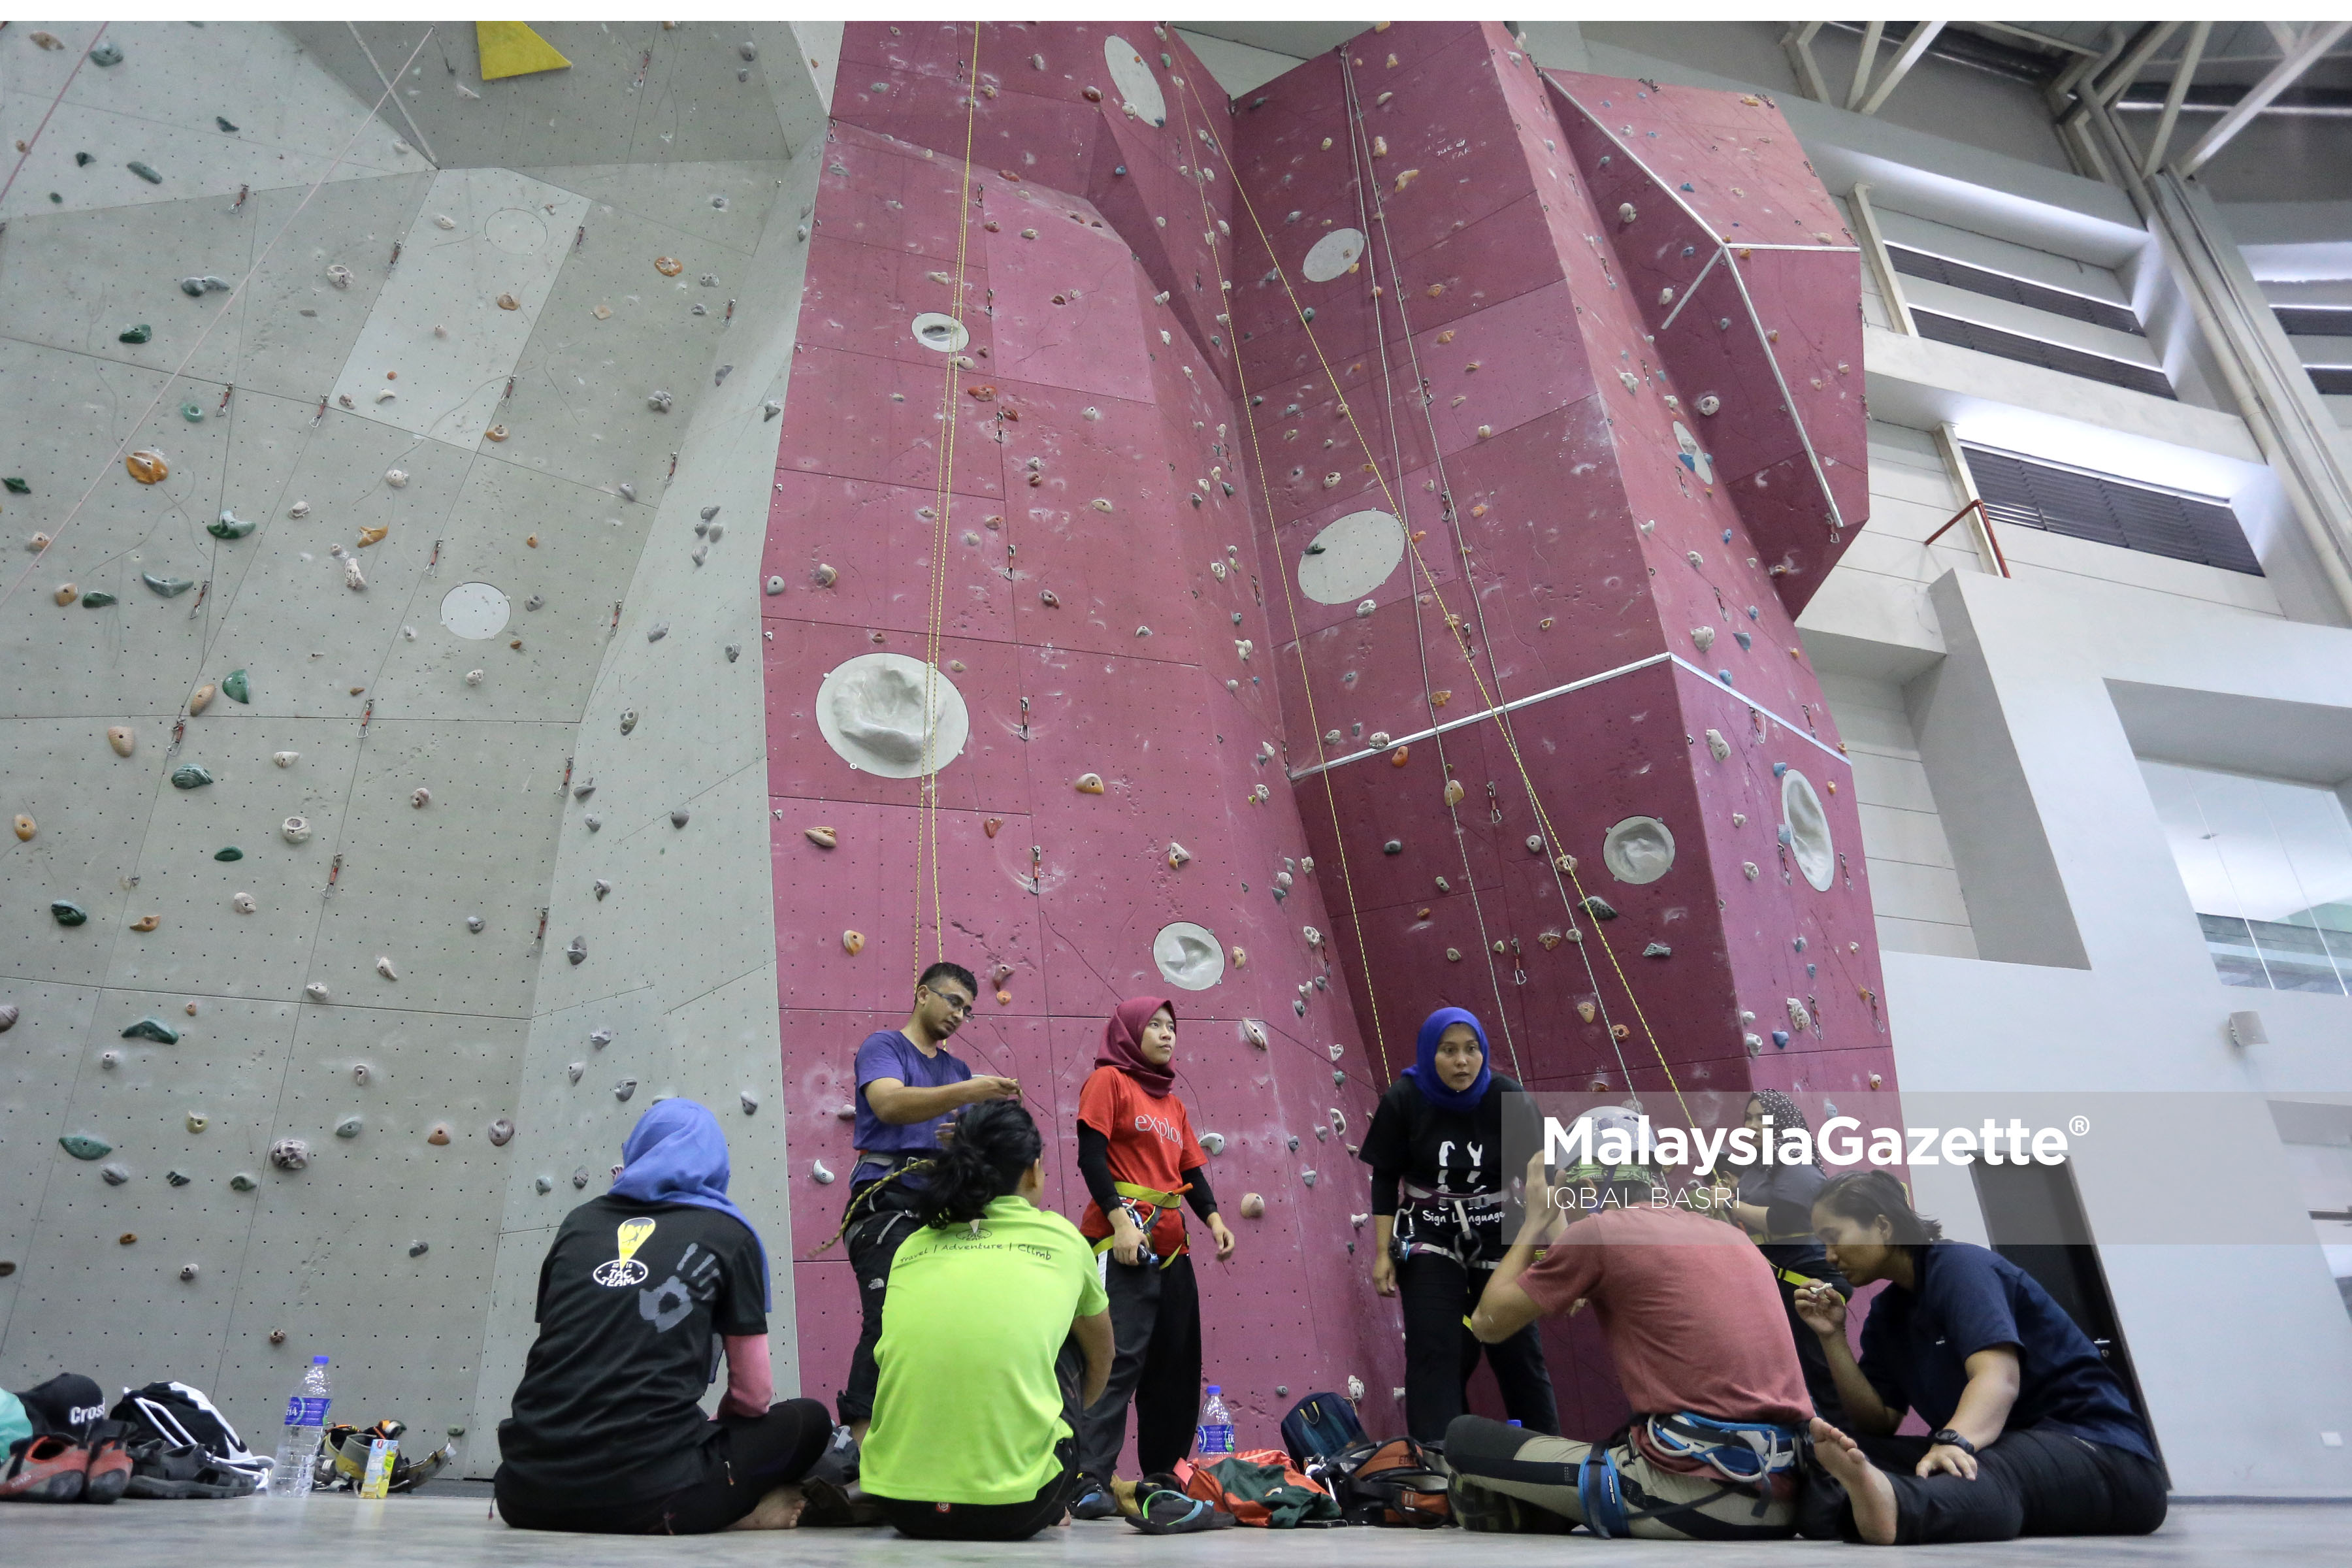 Sekumpulan remaja meluangkan masa hujung minggu dengan sukan wall climbing ketika tinjauan lensa Malaysia Gazette di Taman Cabaran Putrajaya. foto IQBAL BASRI, 16 APRIL 2017